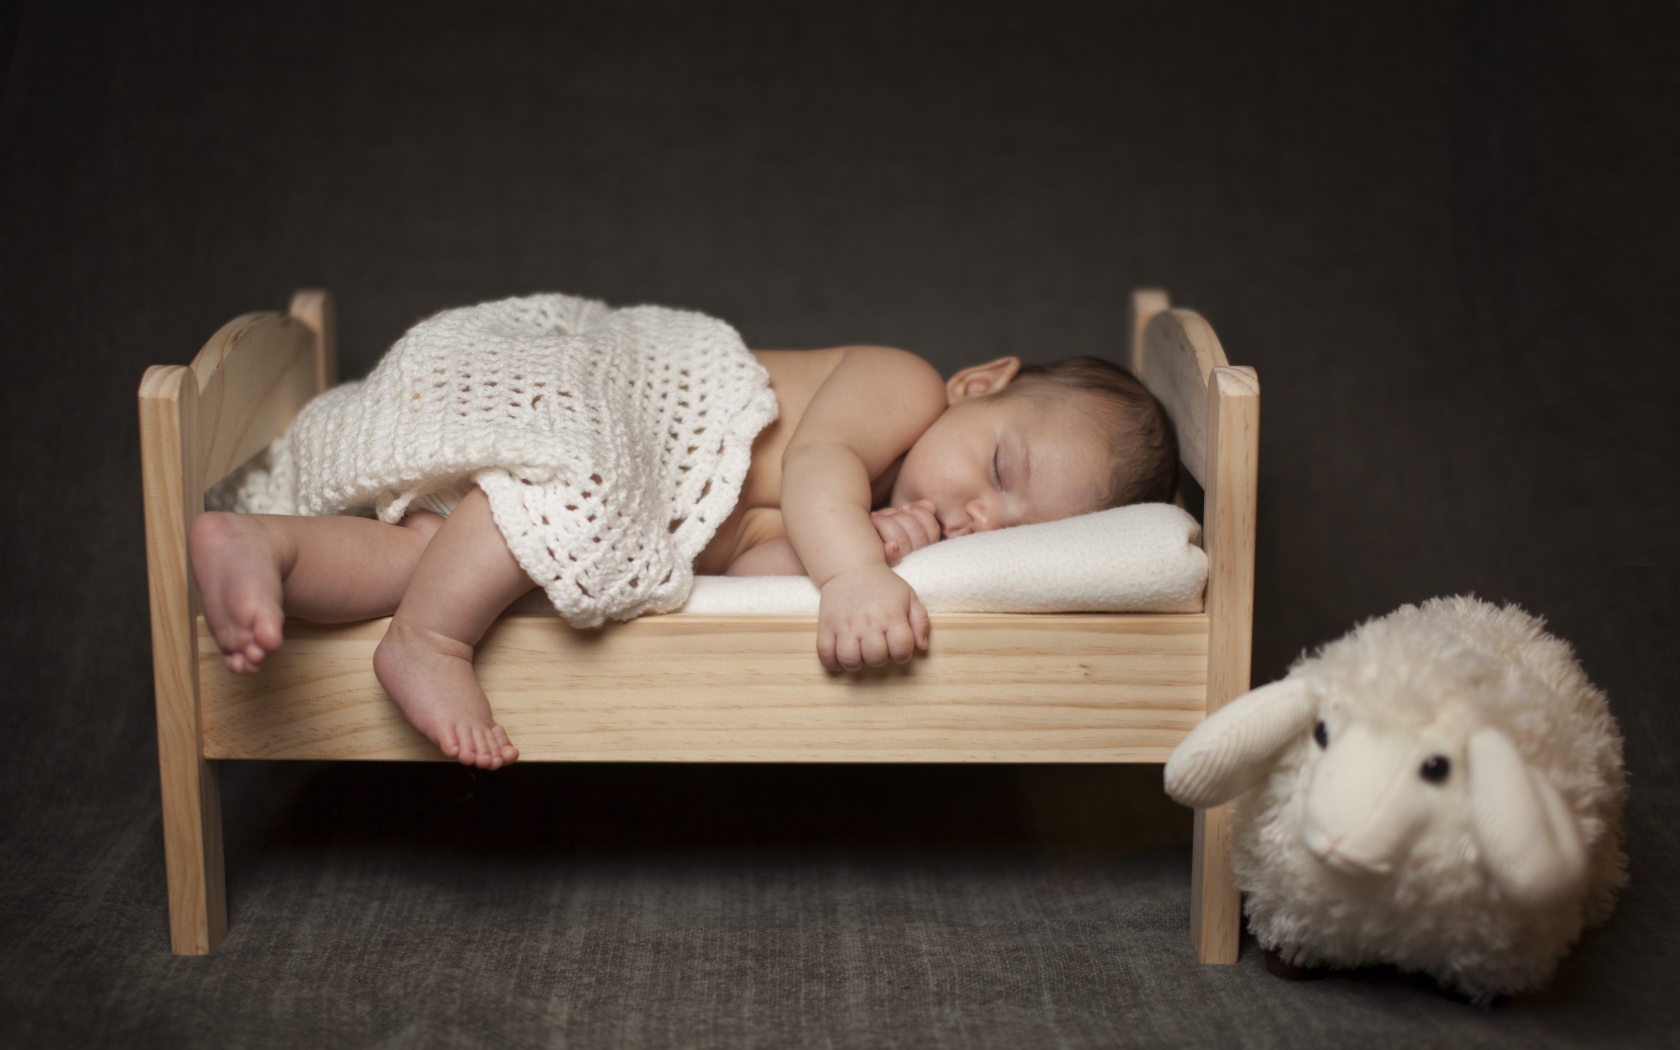 Маленький ребенок спит на деревянной кроватке с игрушкой